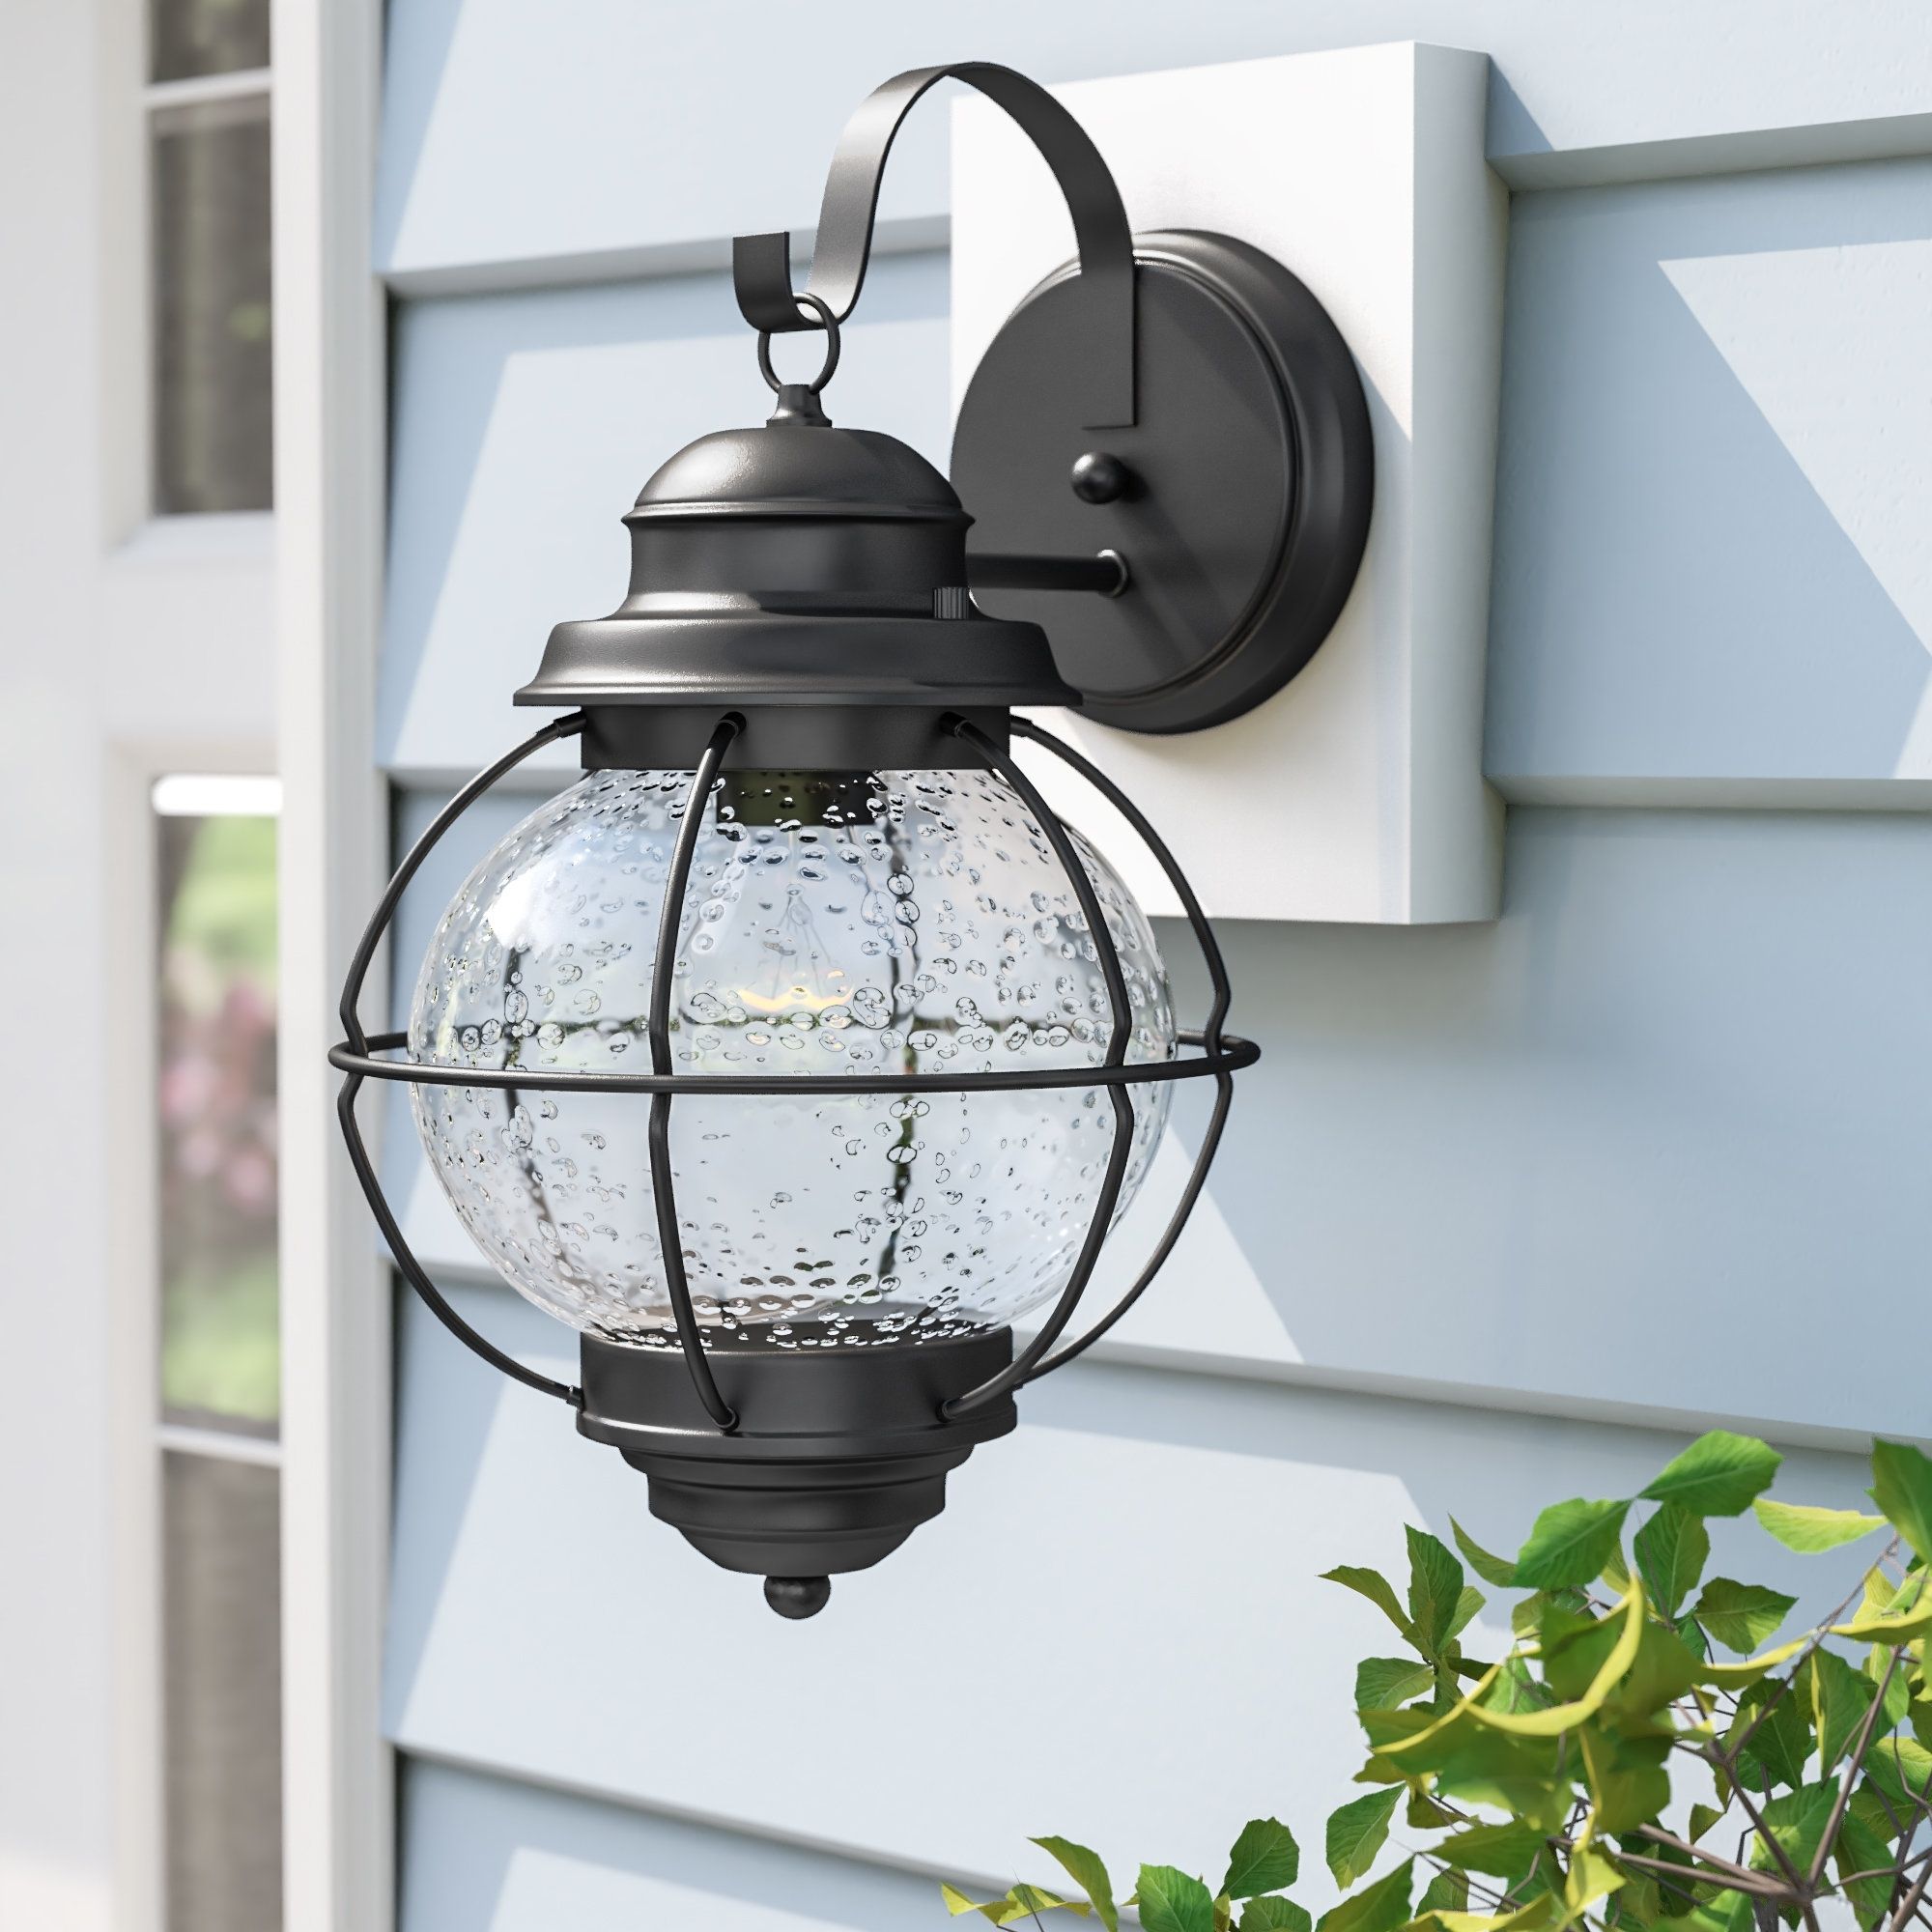 Beachcrest Home Cason 1 Light Outdoor Wall Lantern & Reviews | Wayfair Inside Joanns Outdoor Lanterns (View 16 of 20)